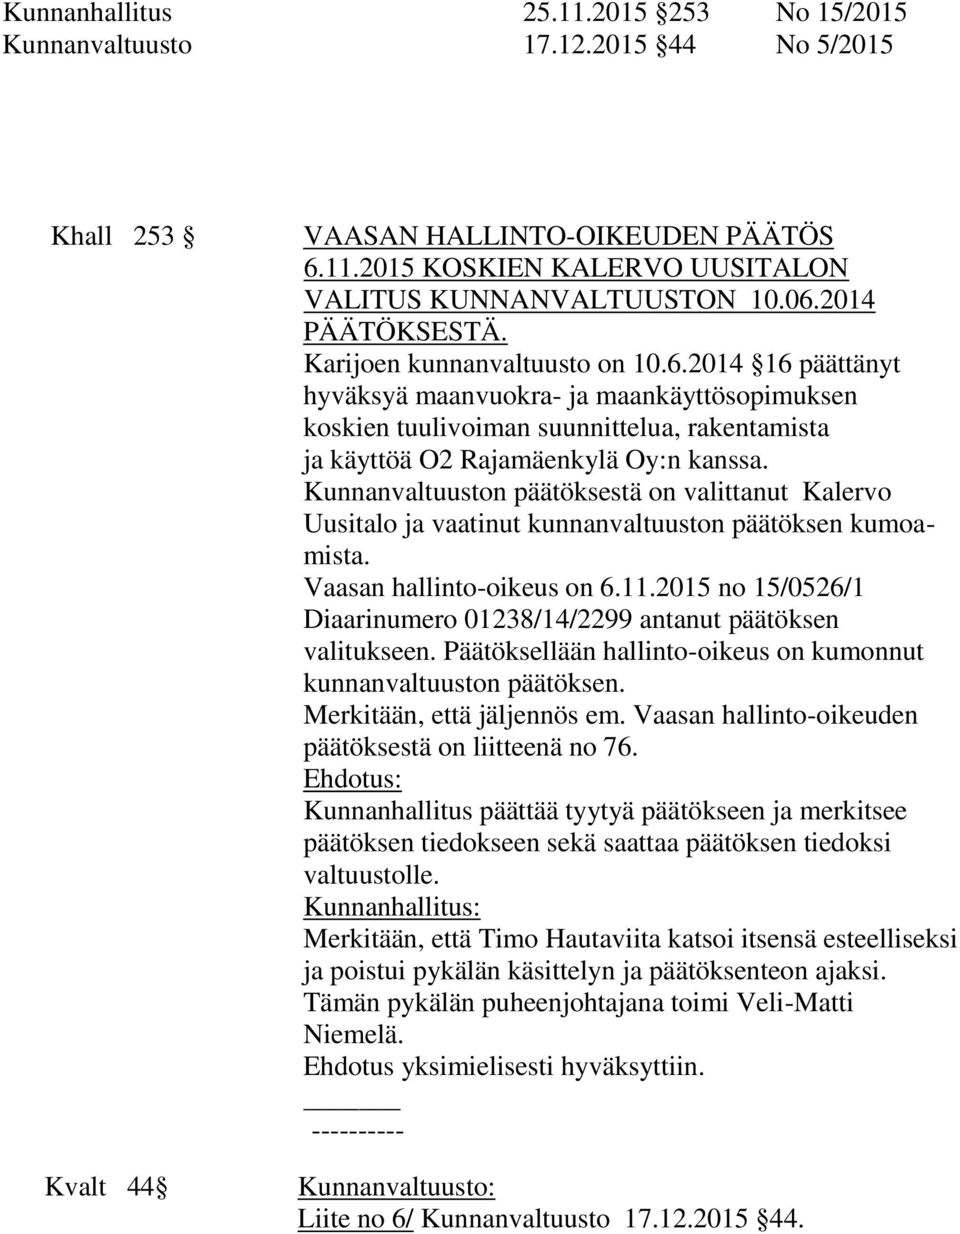 Kunnanvaltuuston päätöksestä on valittanut Kalervo Uusitalo ja vaatinut kunnanvaltuuston päätöksen kumoamista. Vaasan hallinto-oikeus on 6.11.